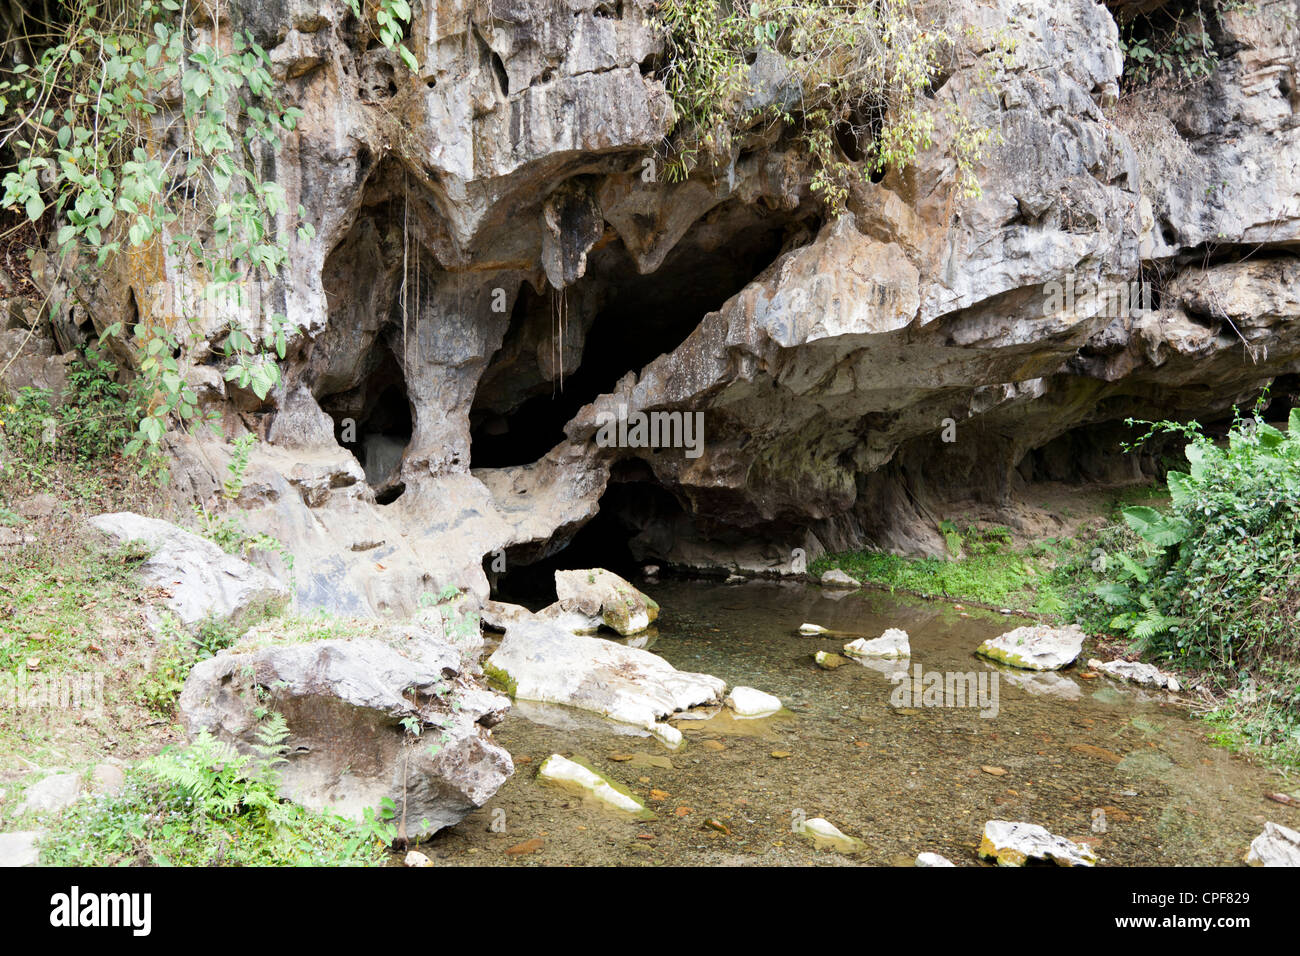 Una piccola grotta di pietra calcarea con la sua brook nelle vicinanze di Muang Ngoi Neua (Laos). Une petite grotte calcaire et son ruisseau. Foto Stock